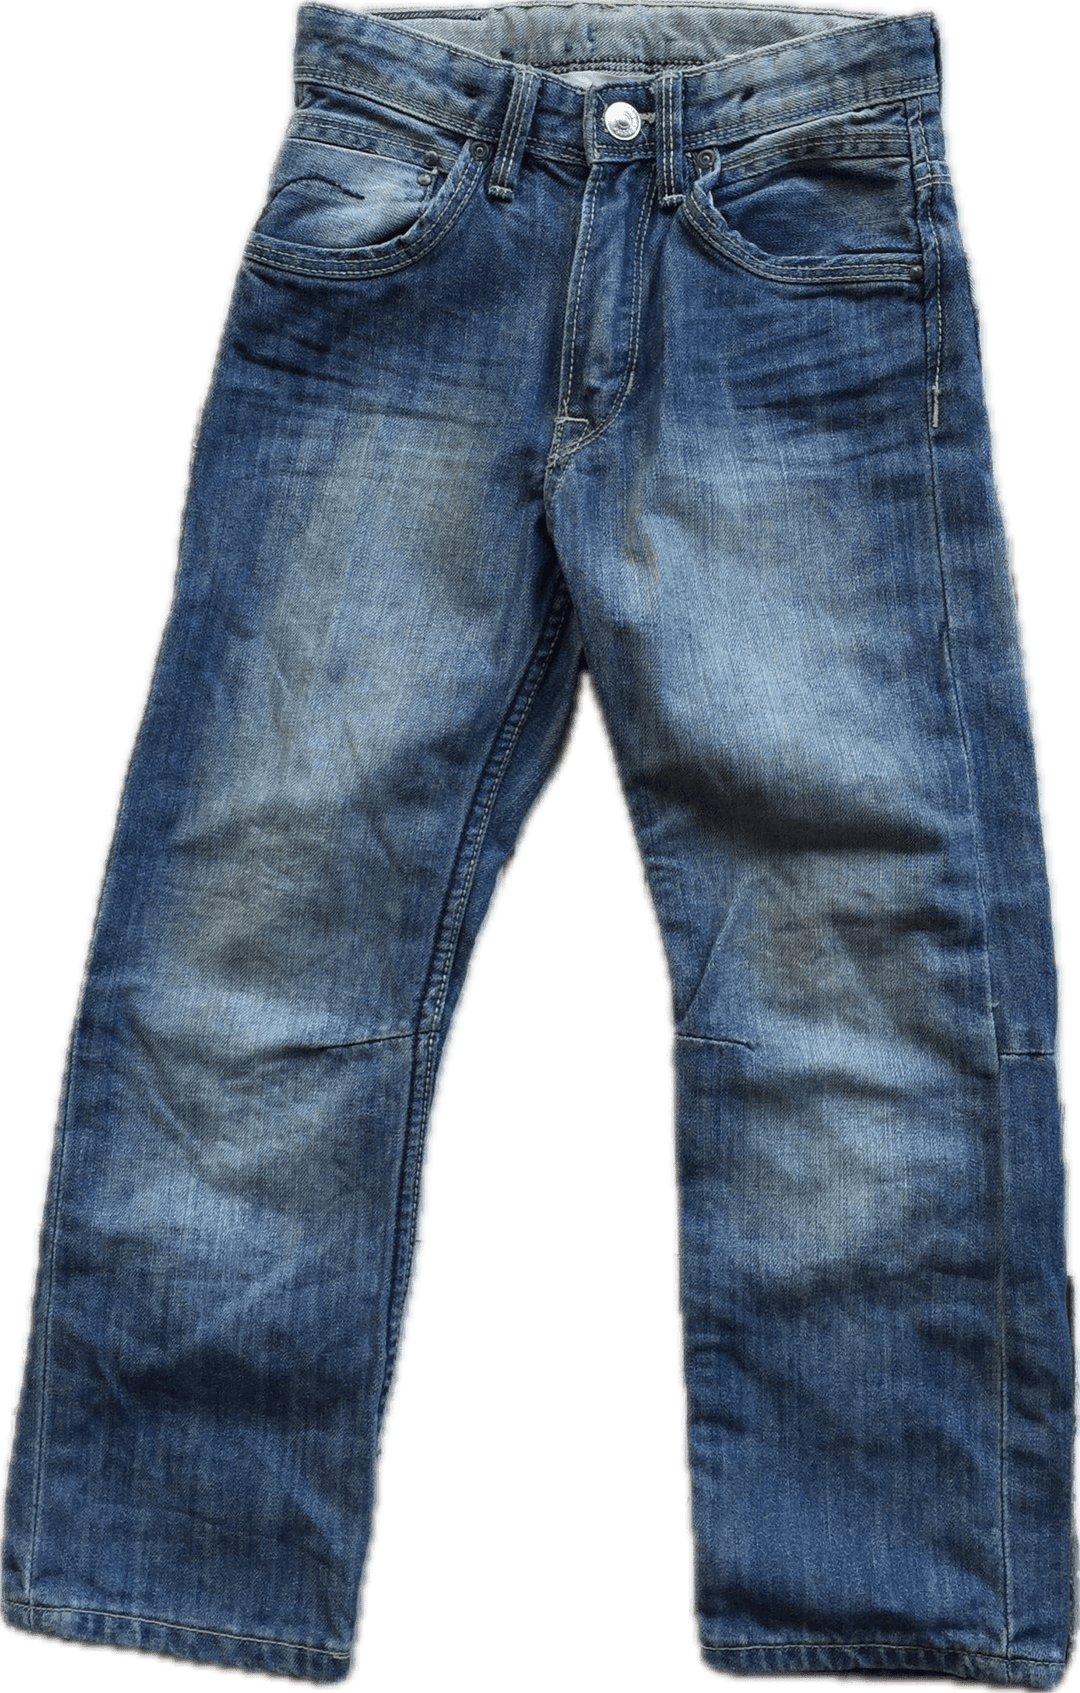 Bragg Boys Straight Leg Jeans - Size 5/6 - Jean Pool